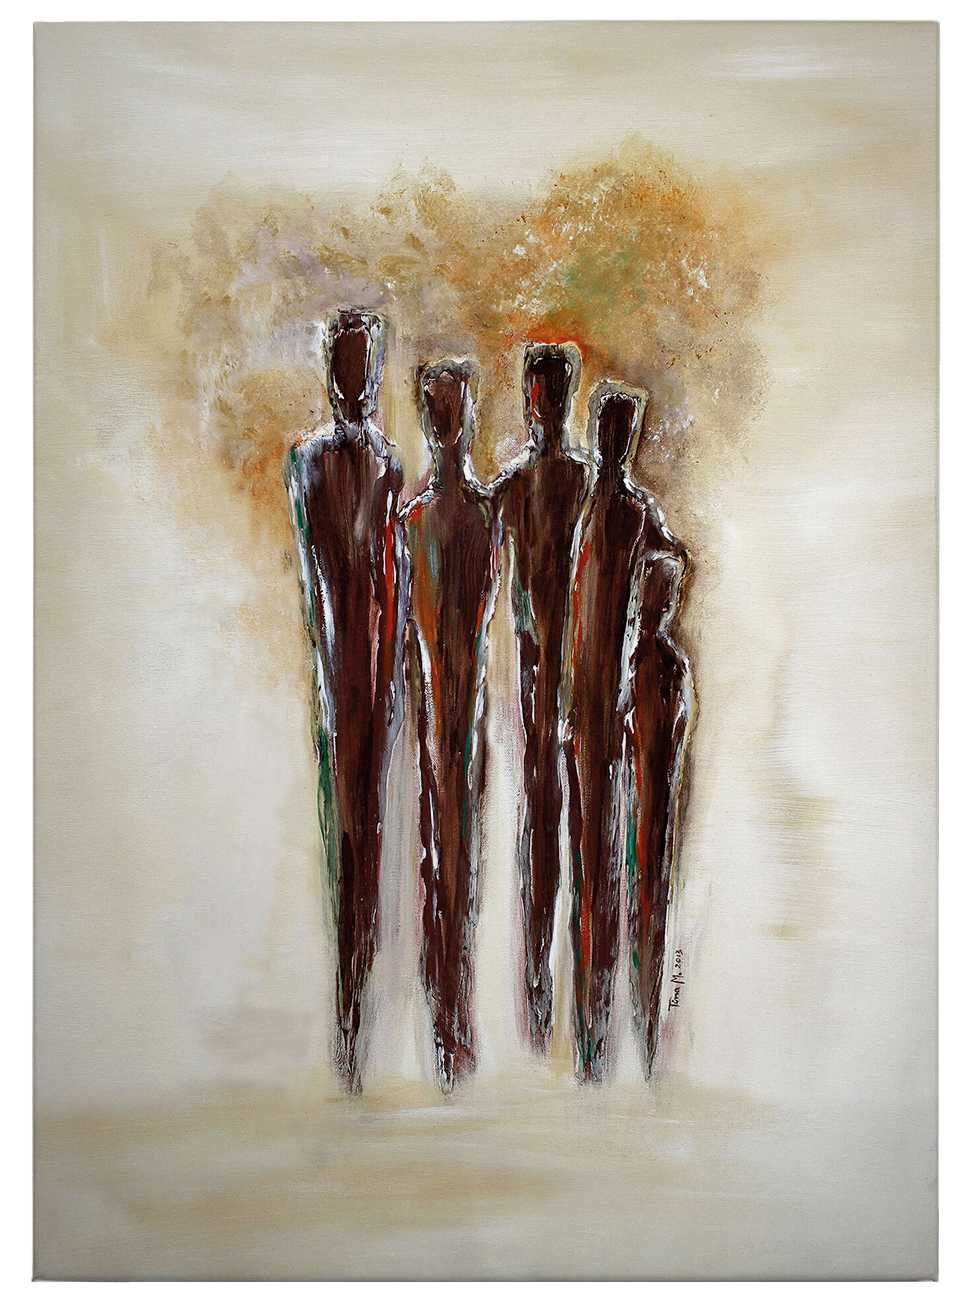             Canvas schilderij Tina Melz "Together 02", staand formaat - 0,50 m x 0,70 m
        